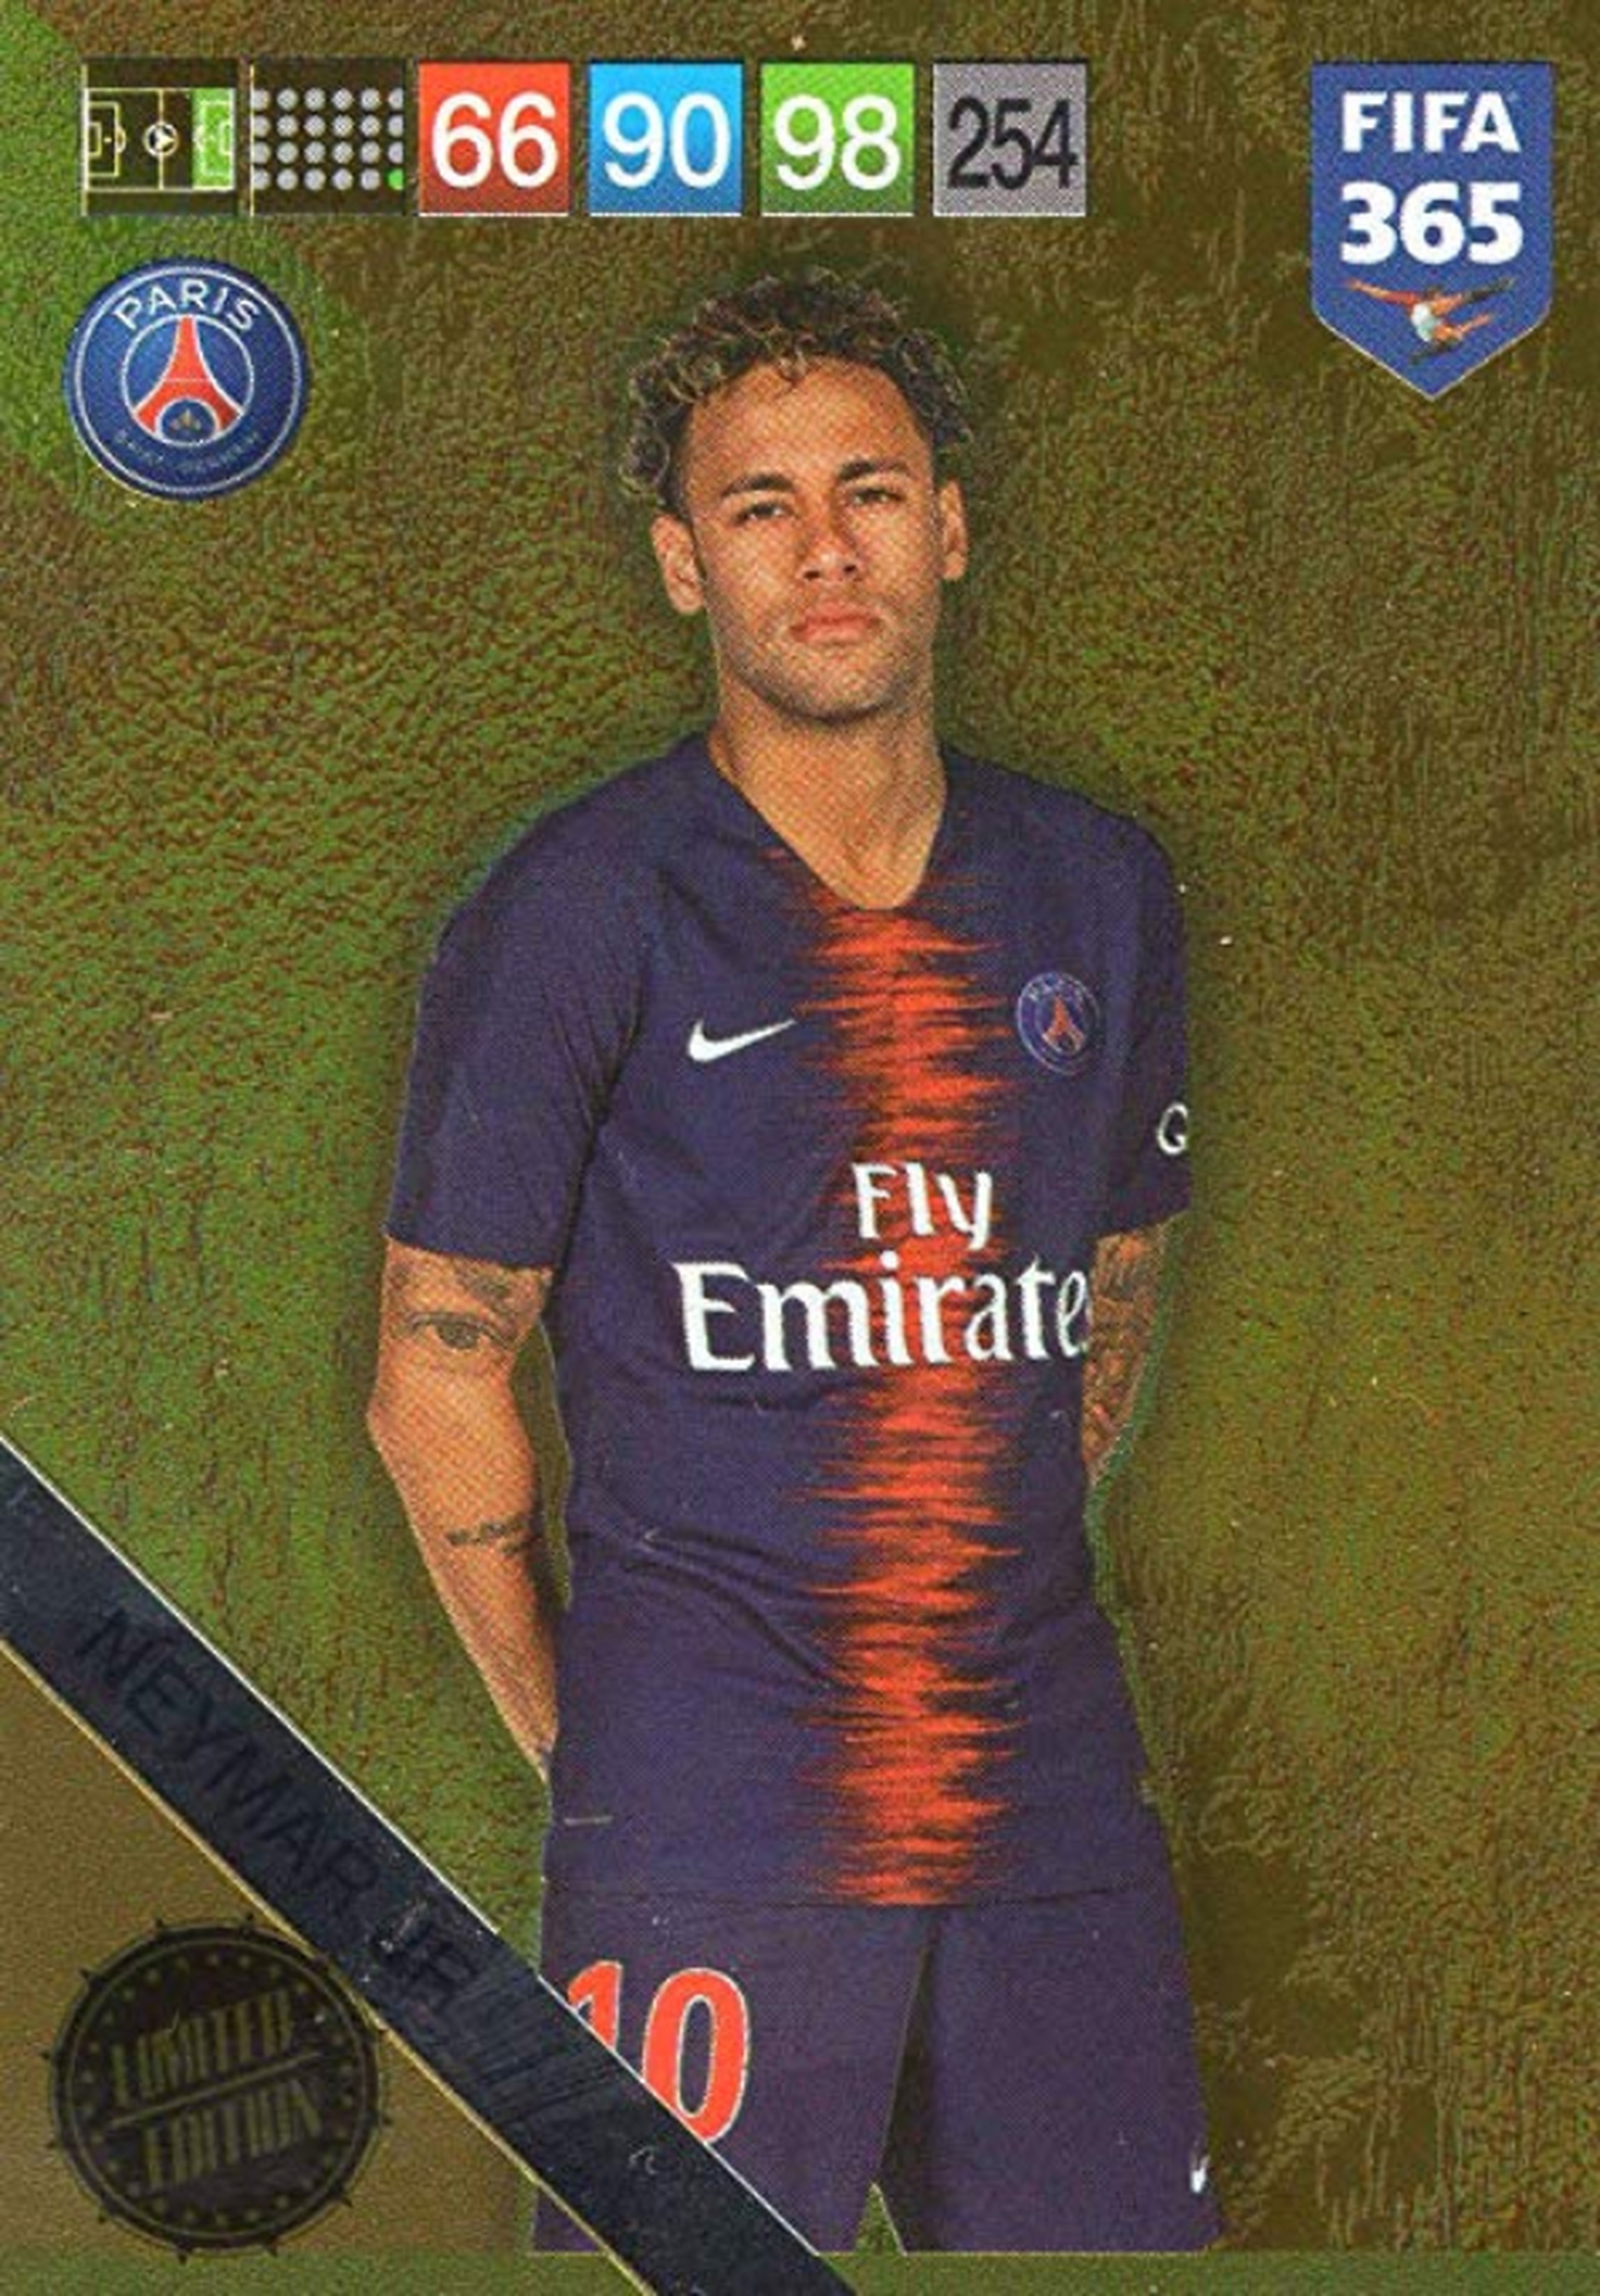 Cromo de Neymar de la colección Adrenalyn XL de Panini